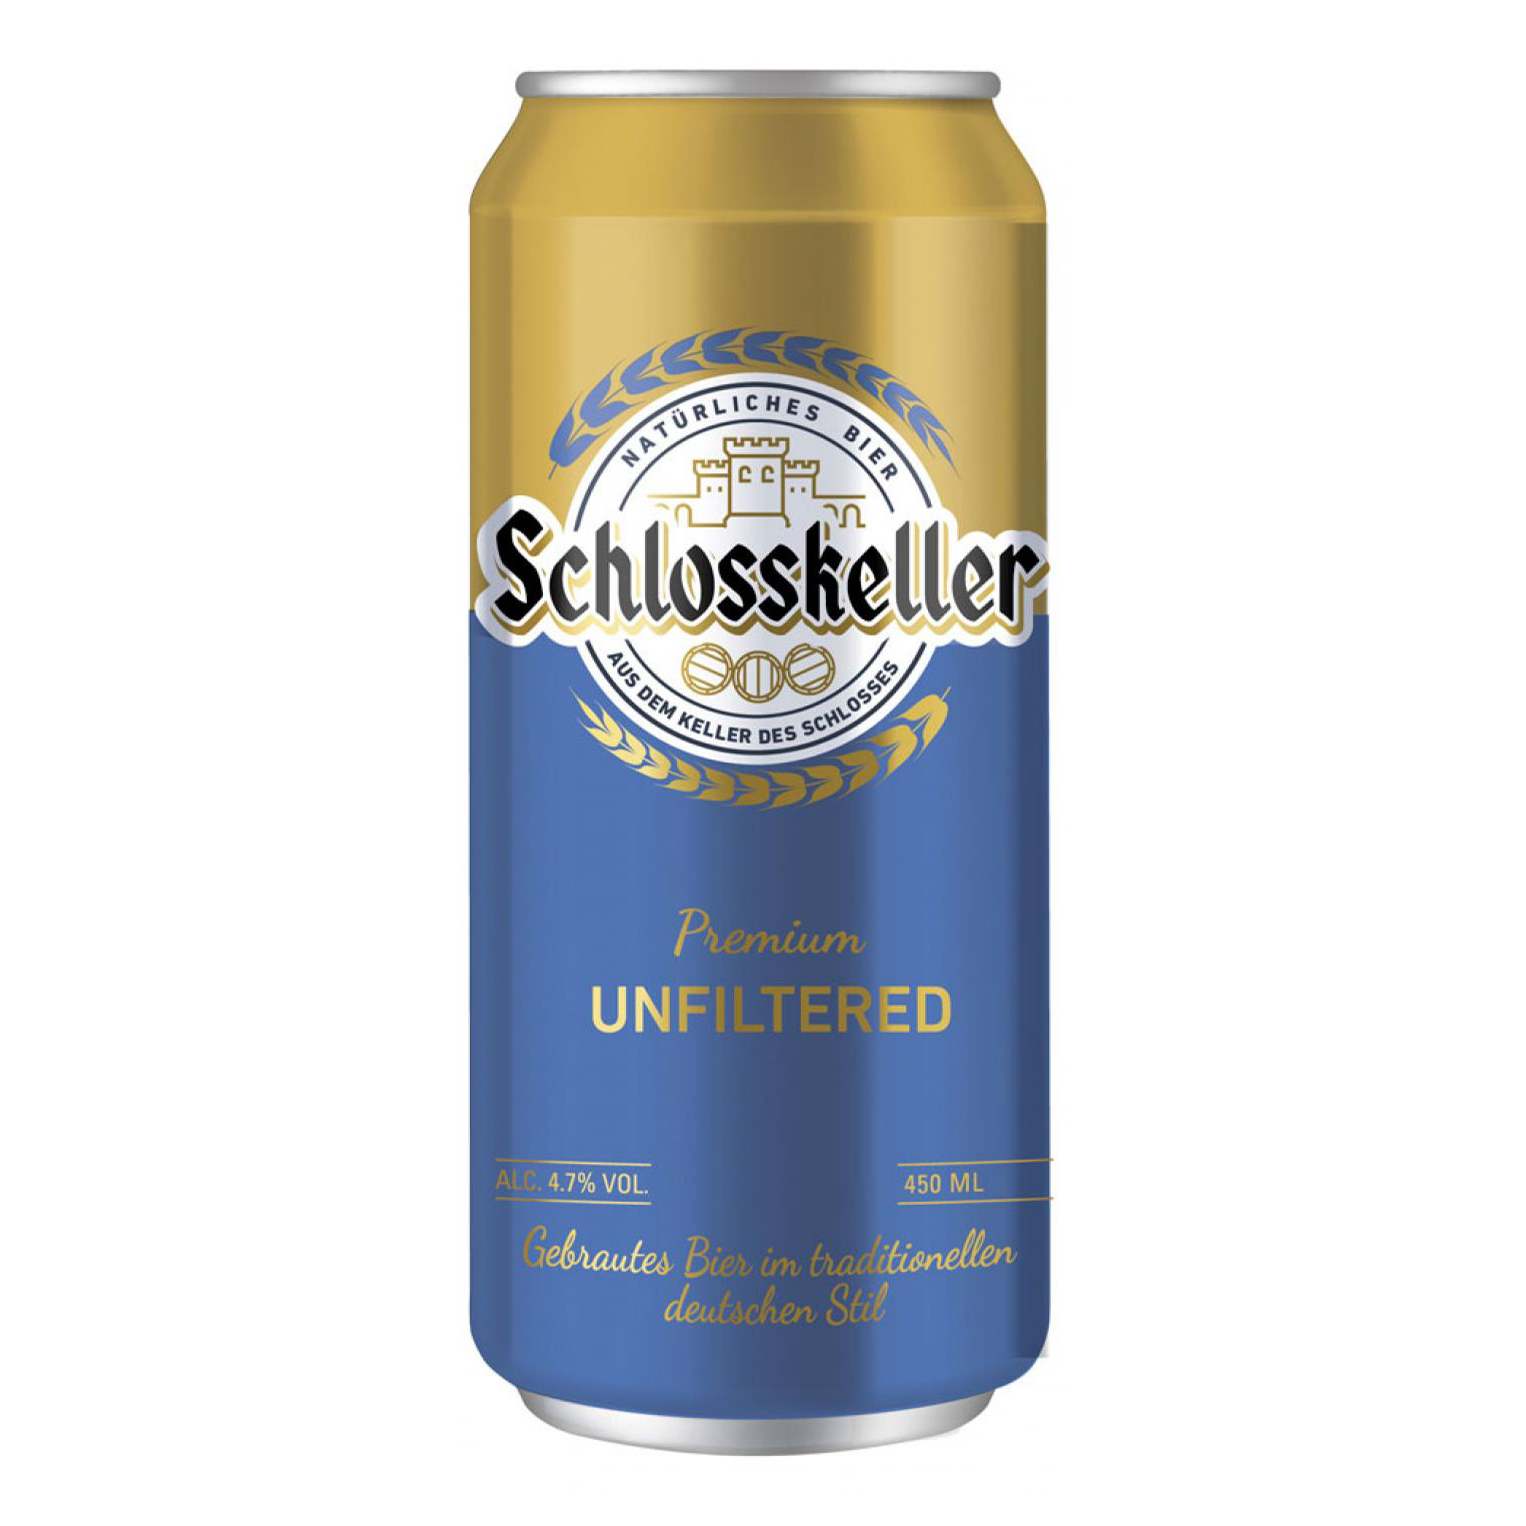 Пиво 0.45 л ж б. Пиво Schlosskeller Unfiltered. Пиво Schlosskeller 0.45. Schlosskeller Pilsener пиво светлое фильтр 4.8. Schlosskeller пиво светлое фильтрованное 4,8 % 0,45 л.